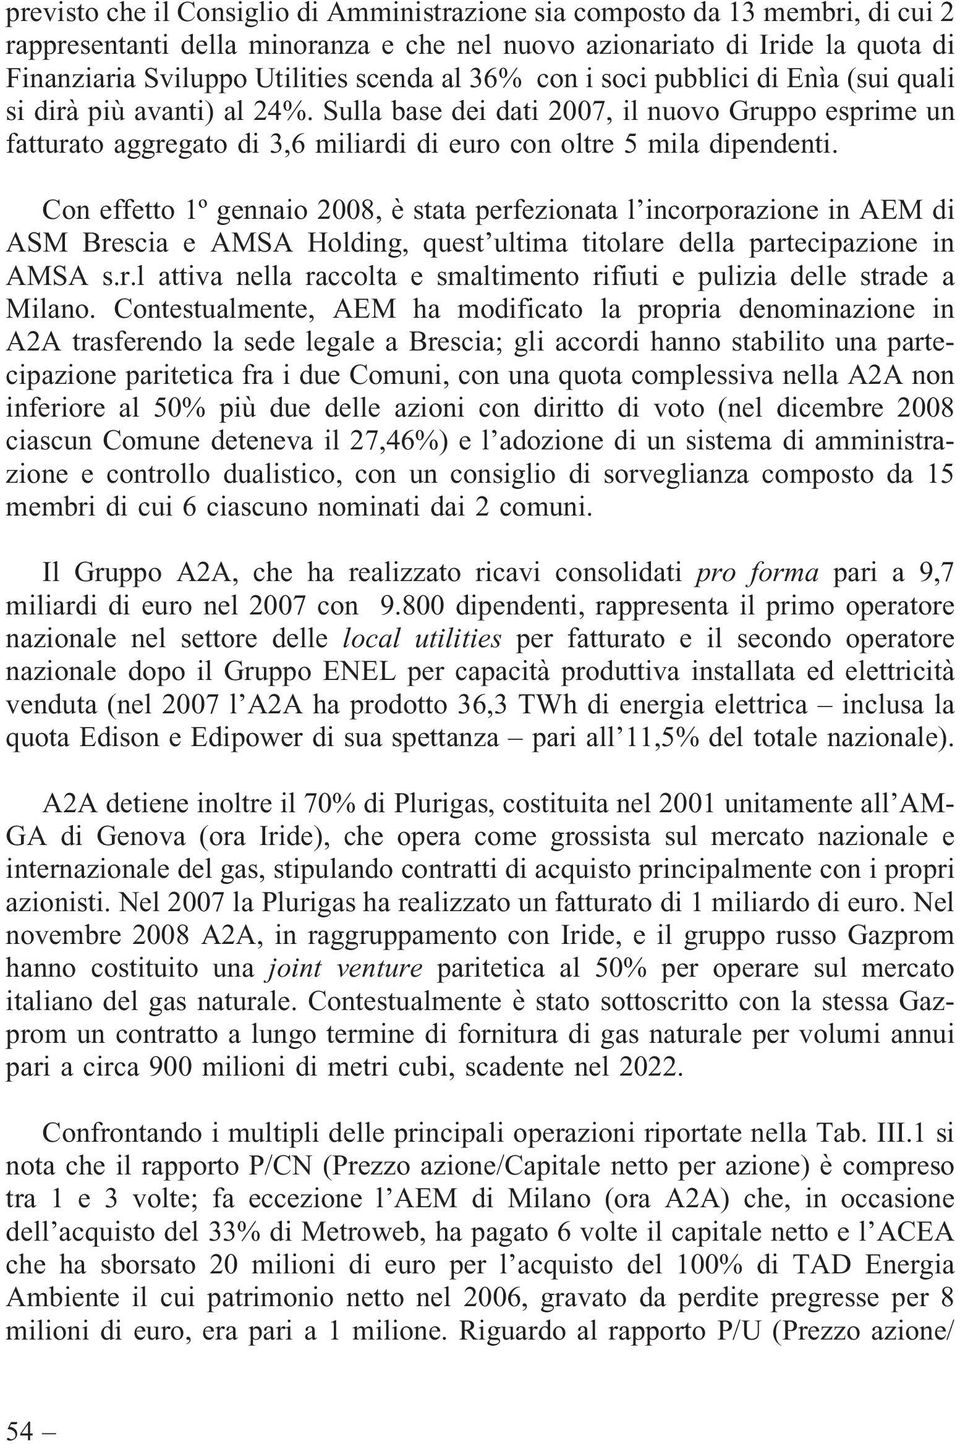 Con effetto 1º gennaio 2008, è stata perfezionata l incorporazione in AEM di ASM Brescia e AMSA Holding, quest ultima titolare della partecipazione in AMSA s.r.l attiva nella raccolta e smaltimento rifiuti e pulizia delle strade a Milano.